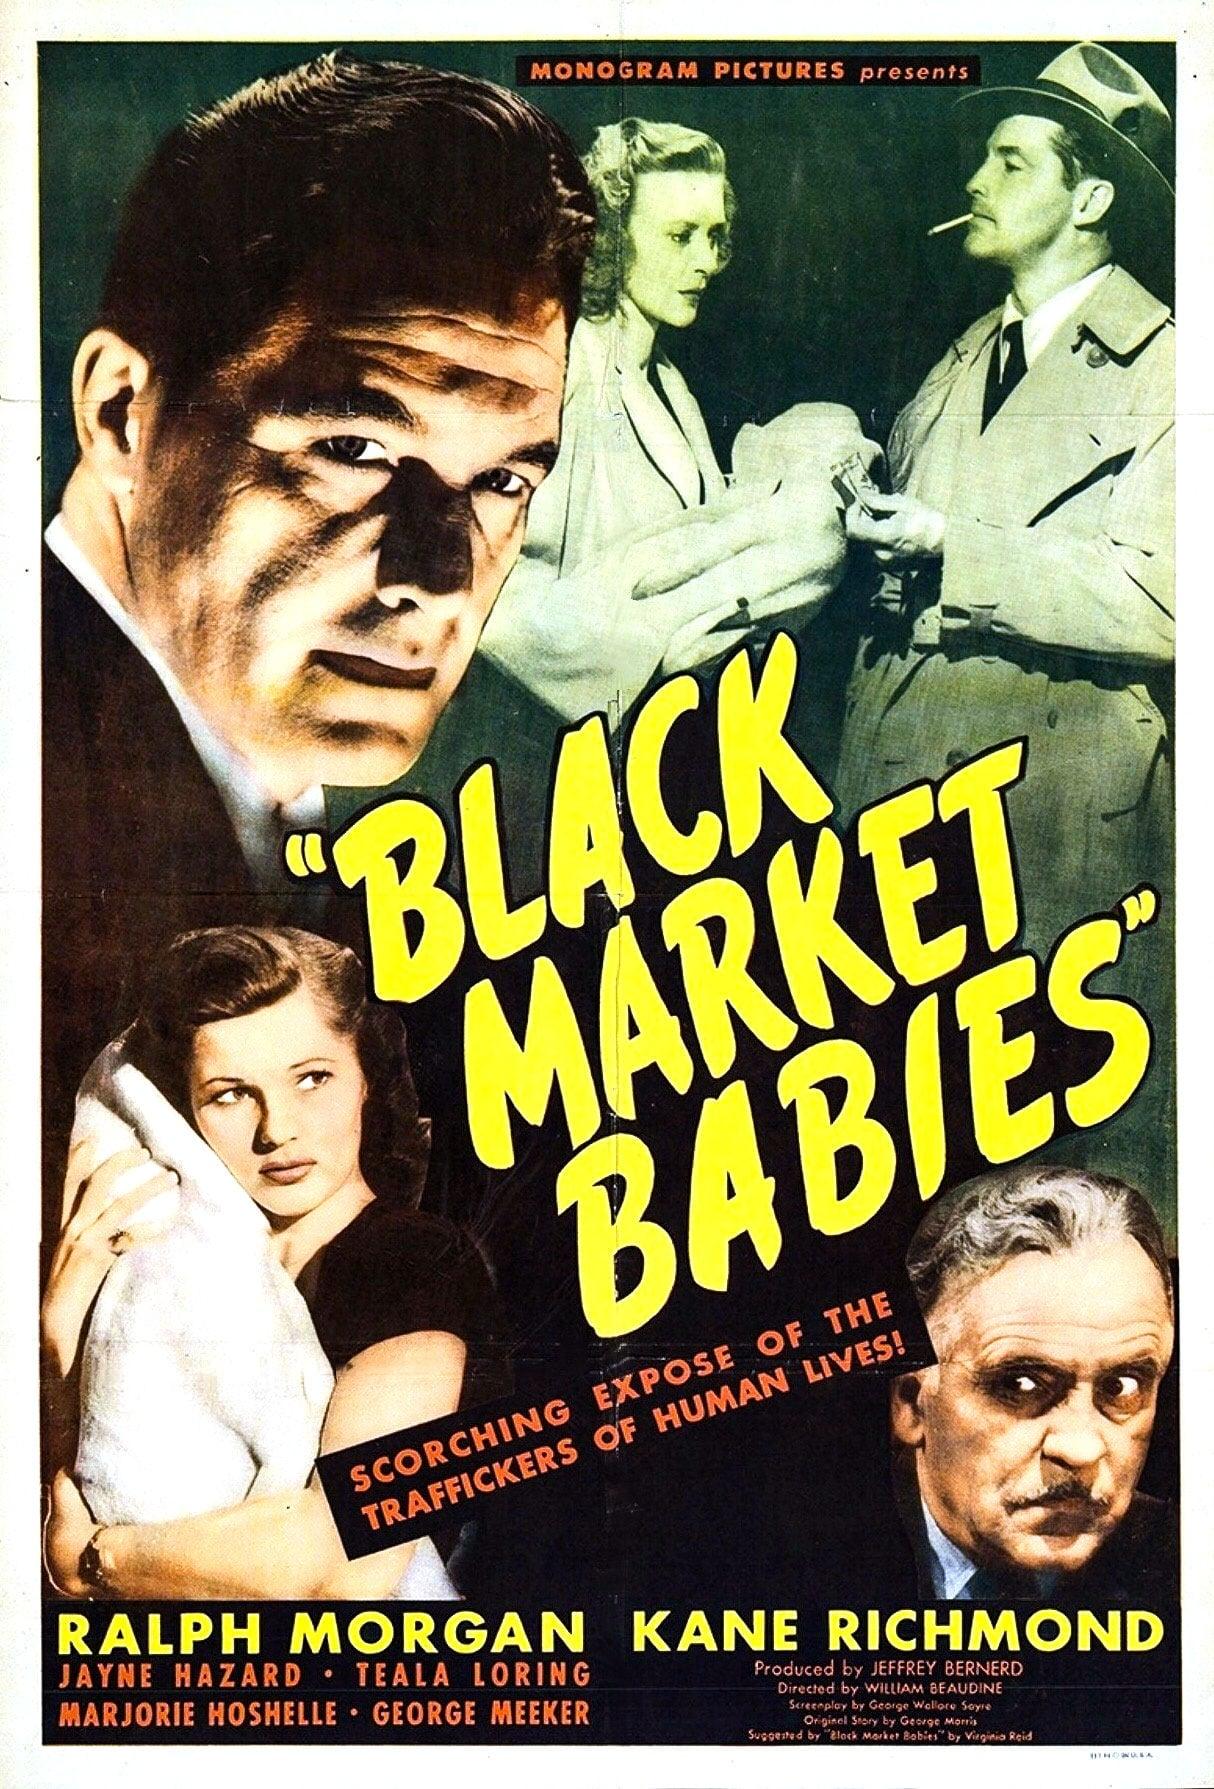 Black Market Babies poster